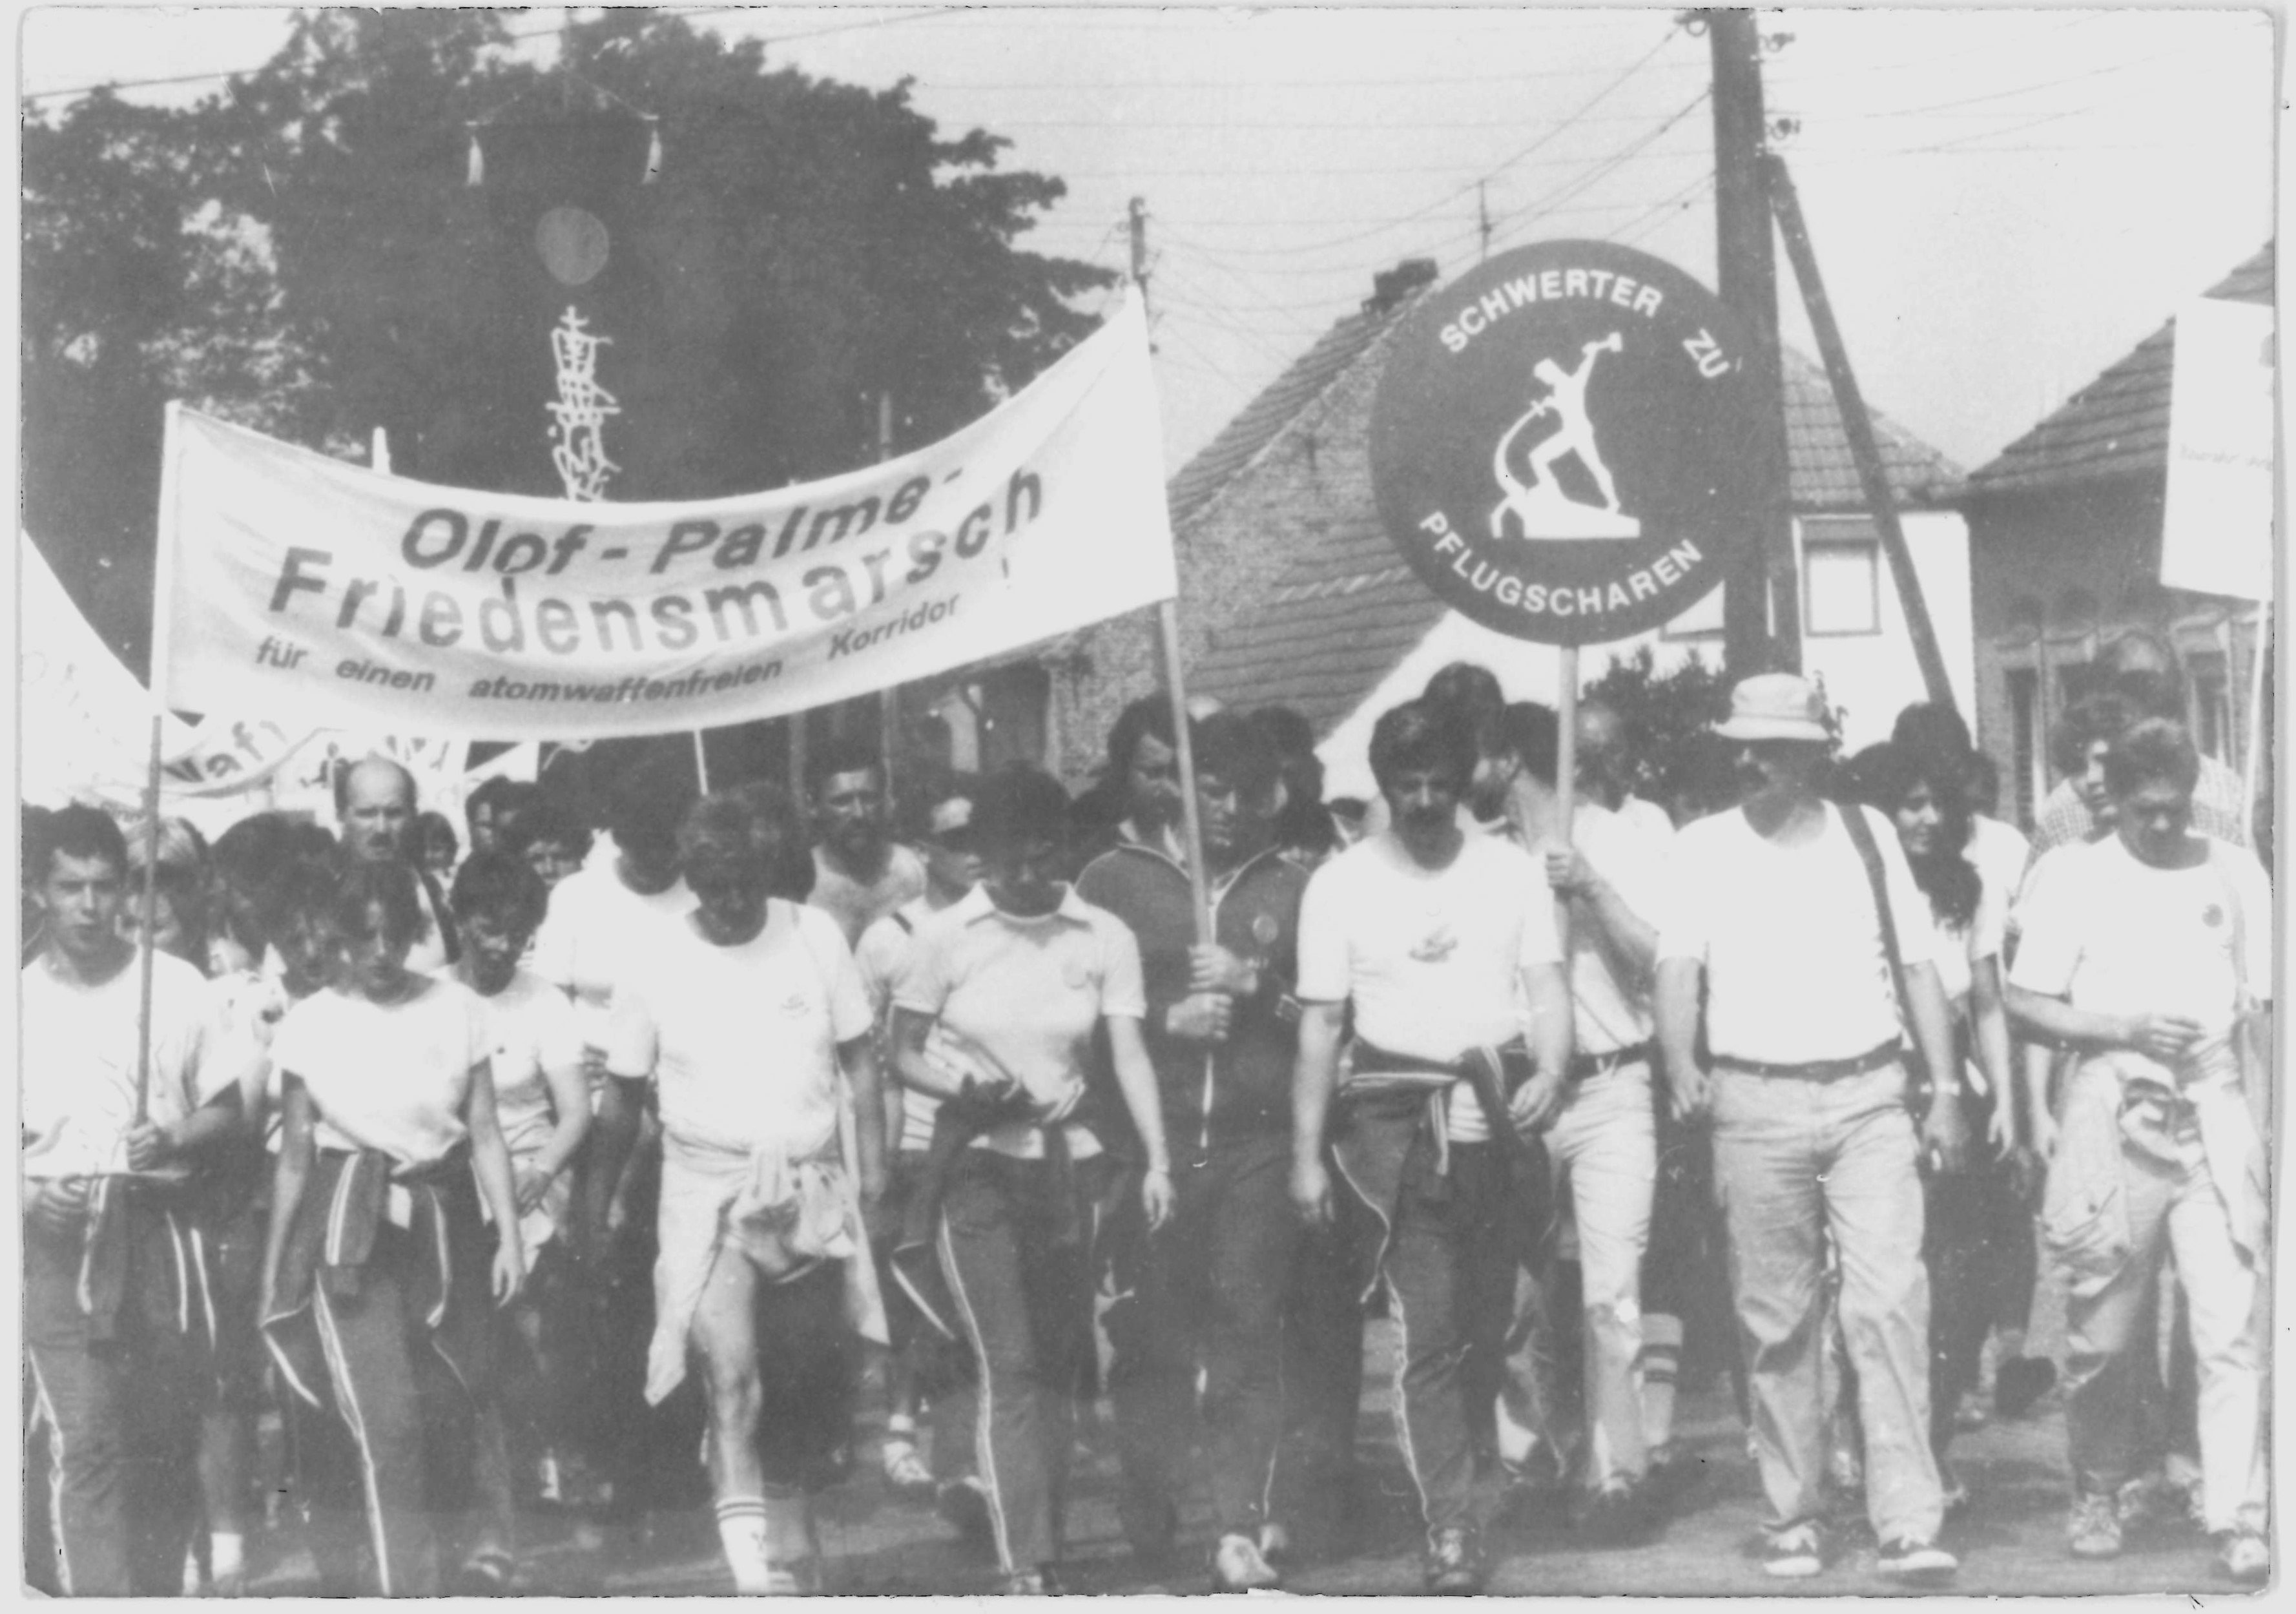 Olof-Palme-Marsch 1987: Spitze des Demonstrationszuges mit Transparenten und Plakaten (DDR Geschichtsmuseum im Dokumentationszentrum Perleberg CC BY-SA)